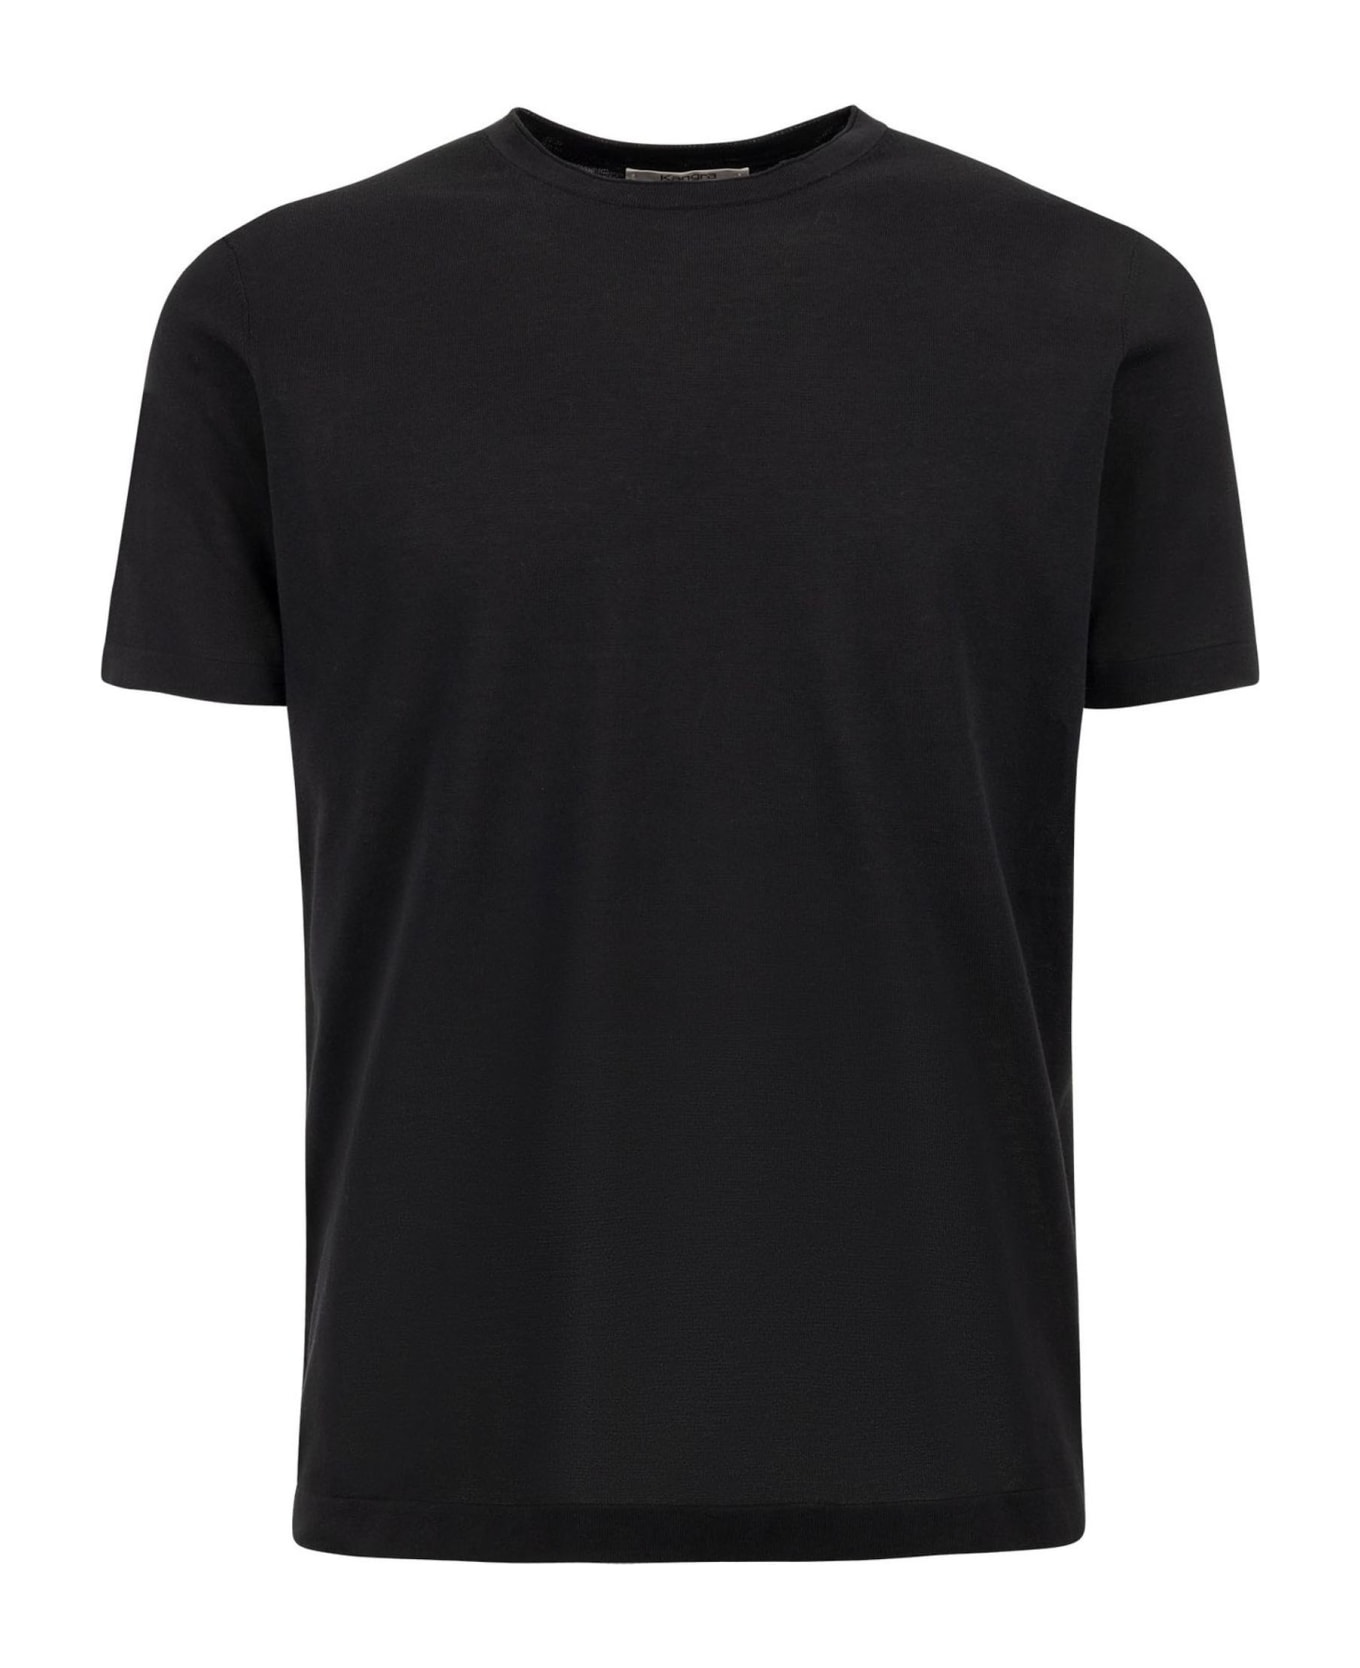 Kangra Black Cotton Ribbed T-shirt - Black シャツ